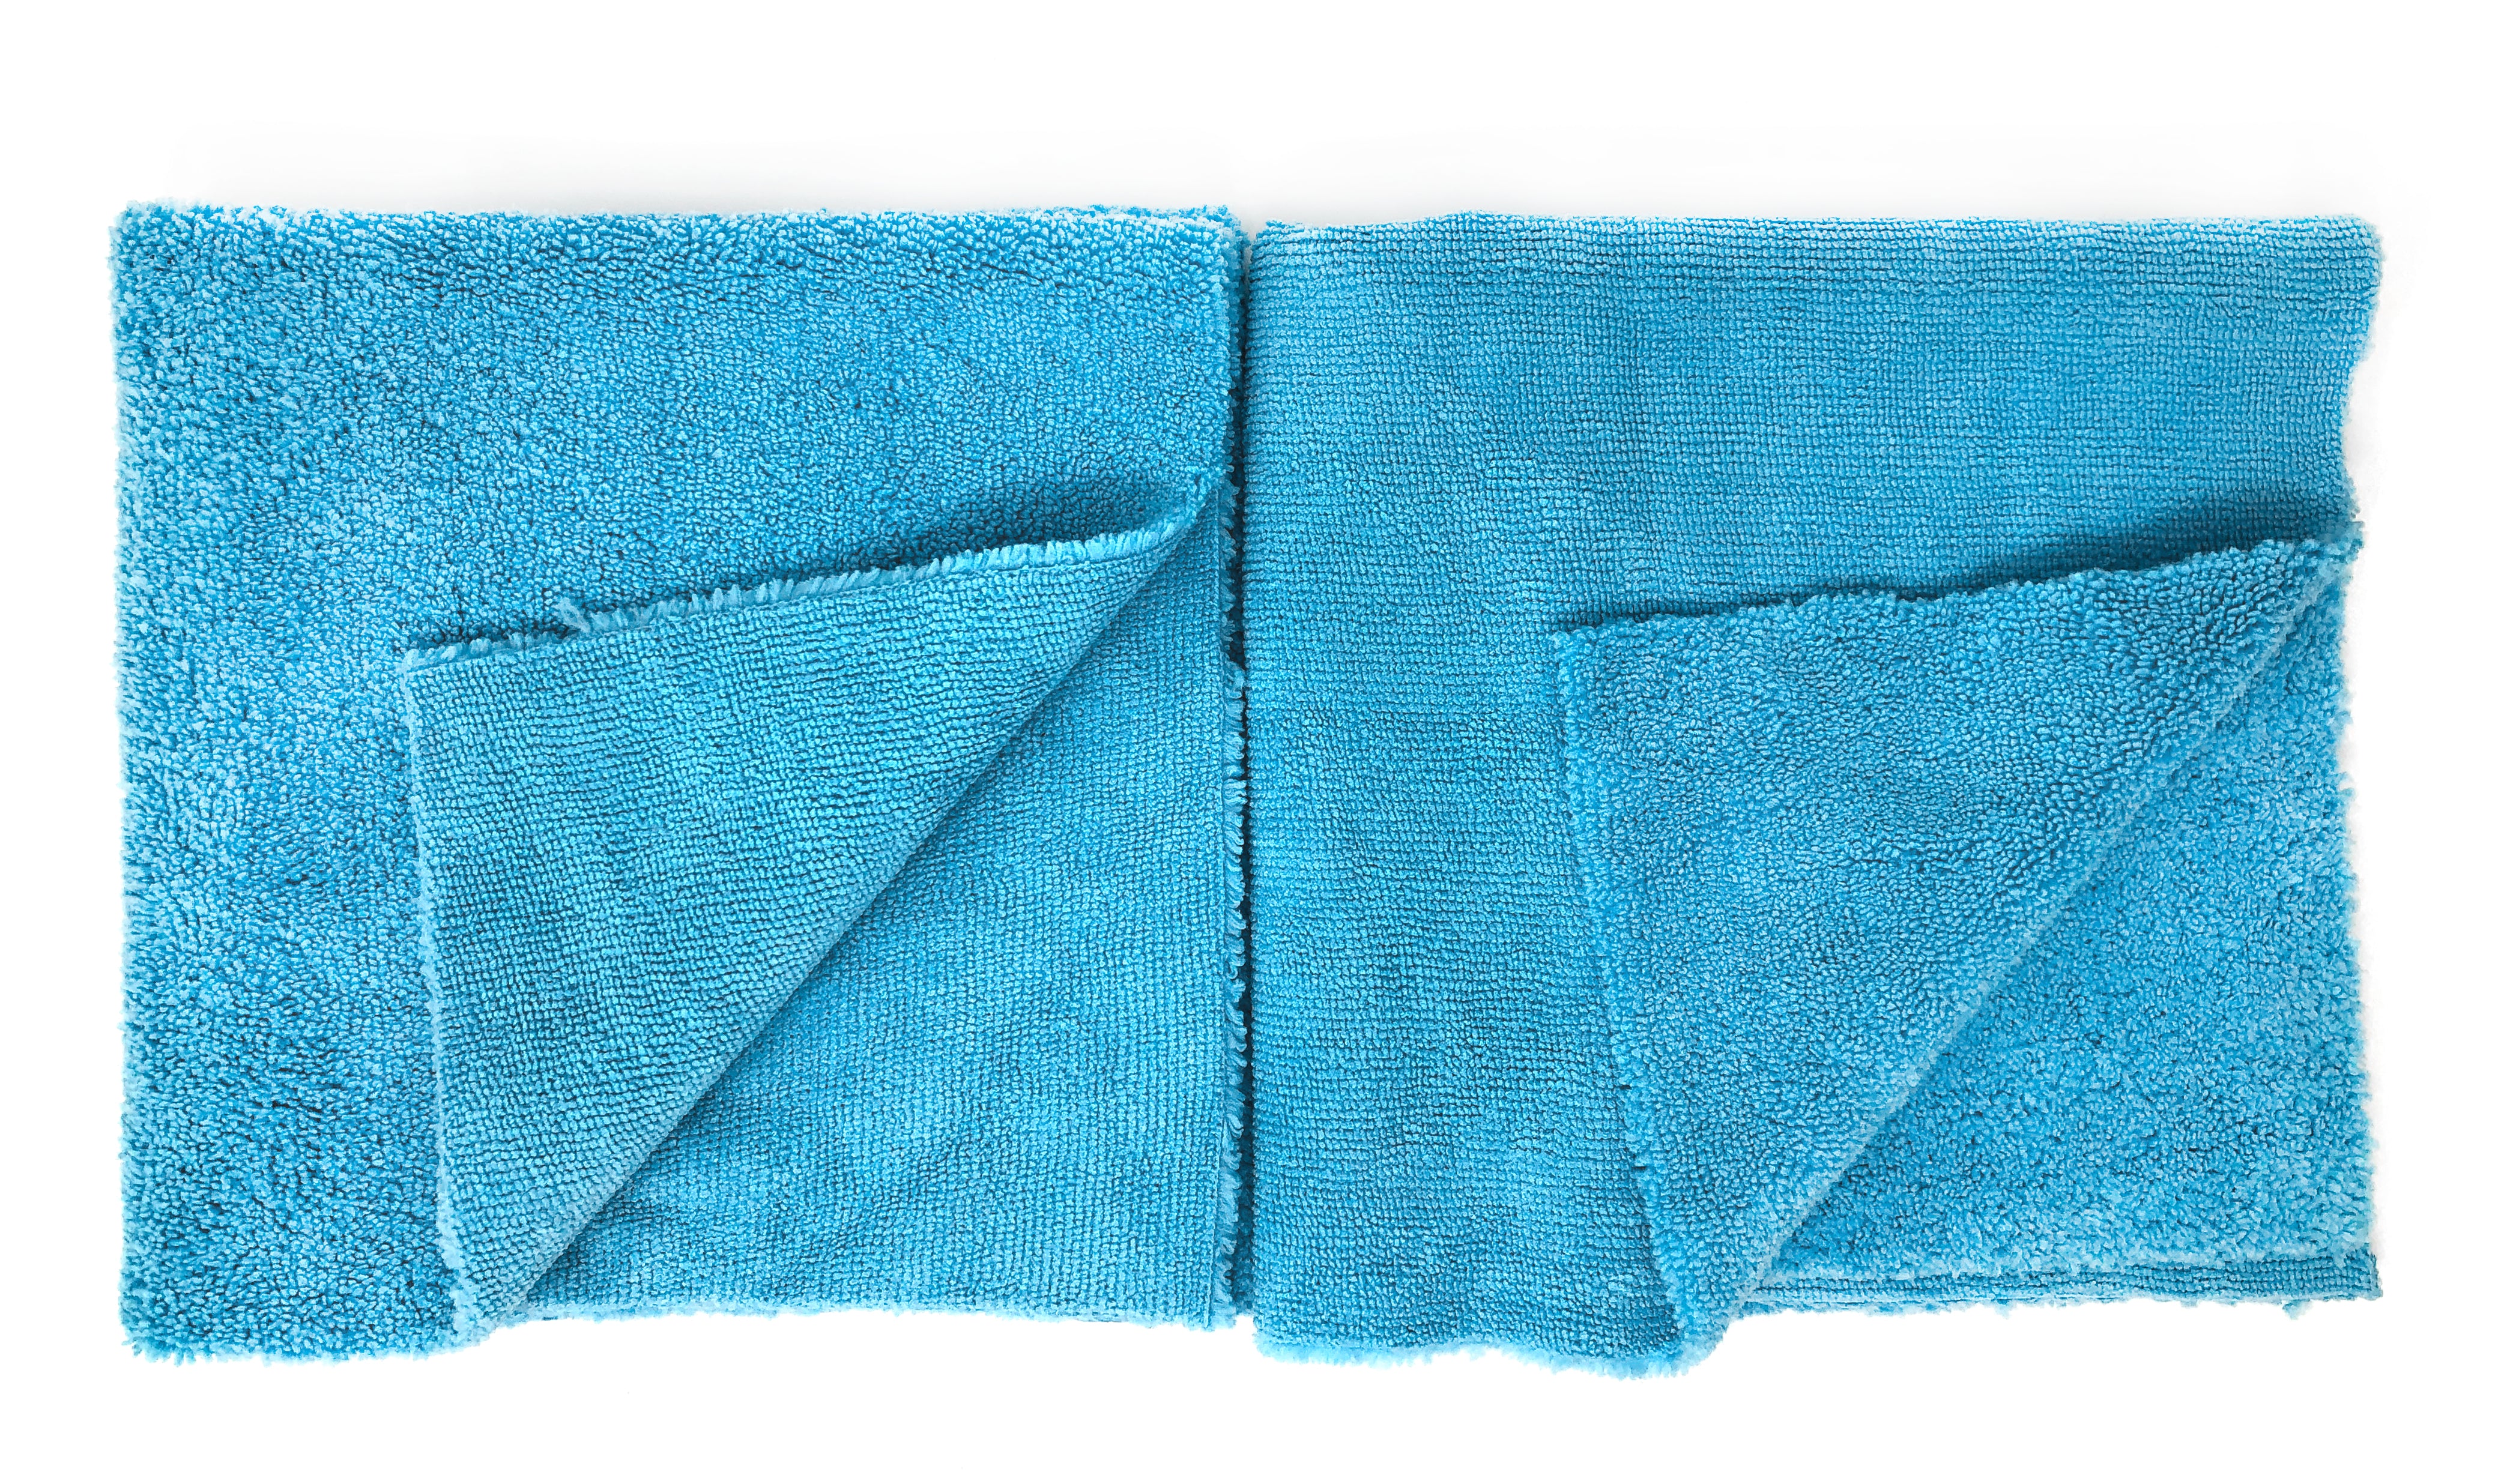 DETAIL ARENA - 380 Dual Pile Microfiber Towel